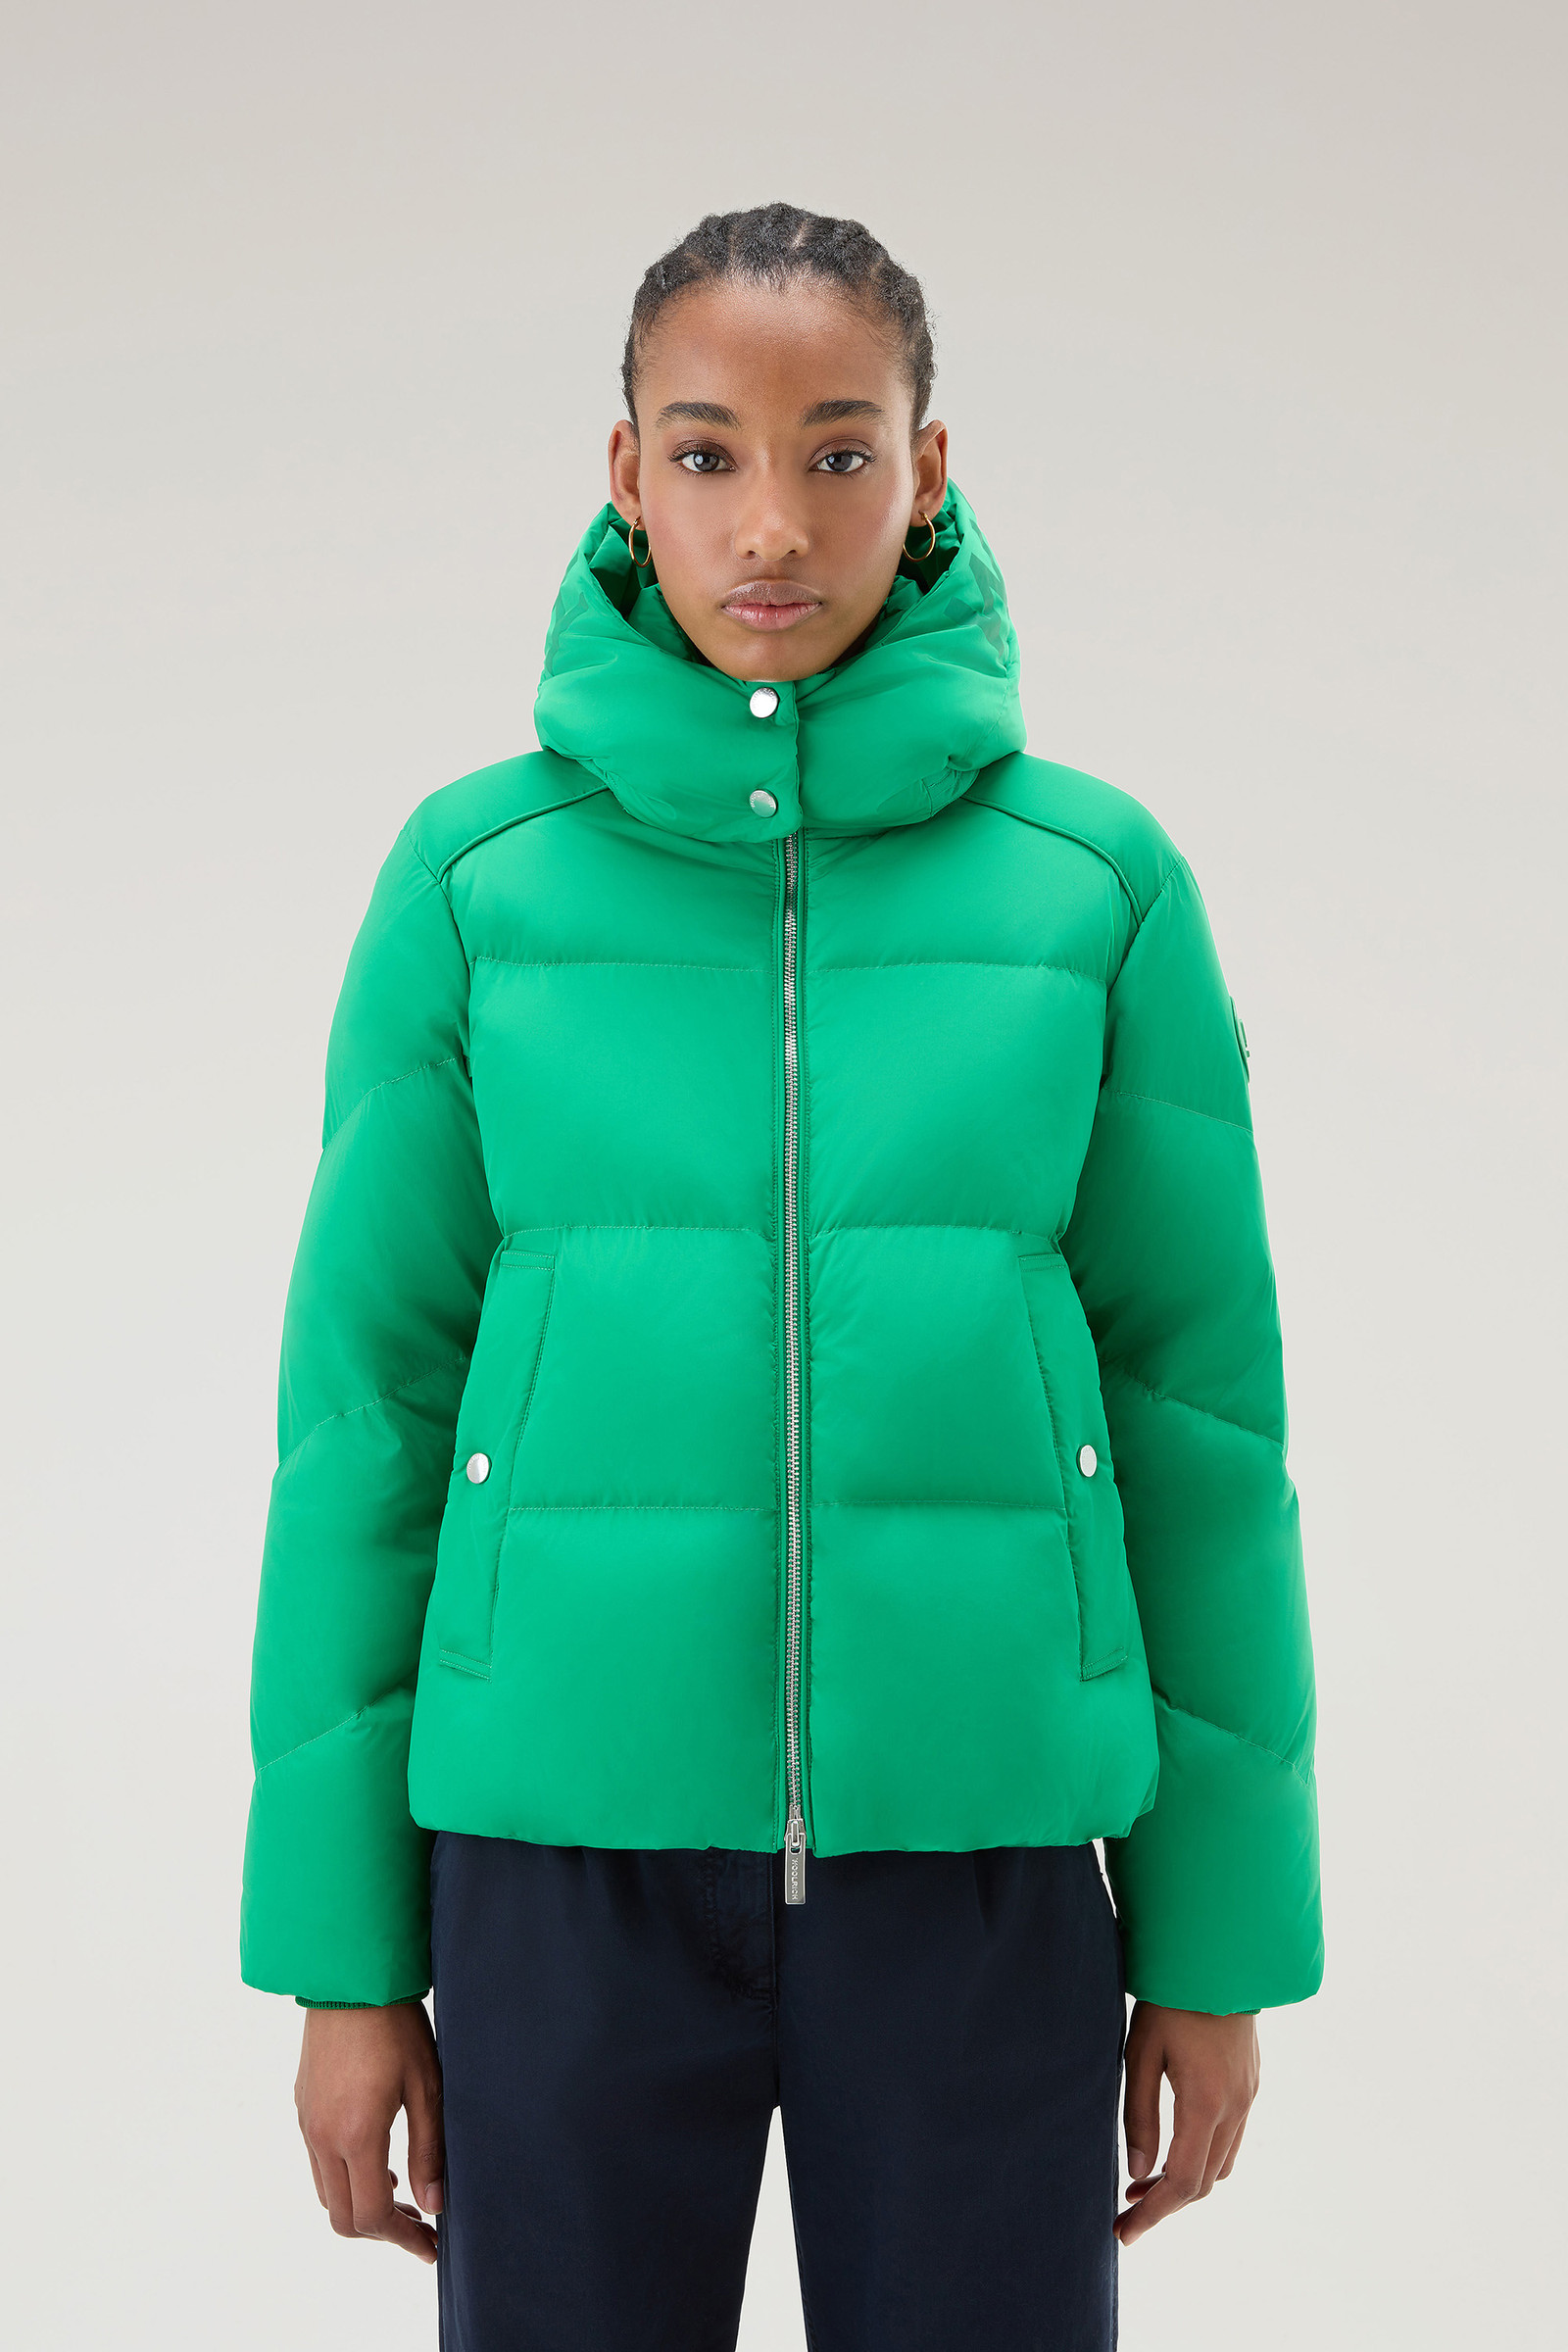 Woolrich Jacquard Sherpa Fleece Jacket - Green